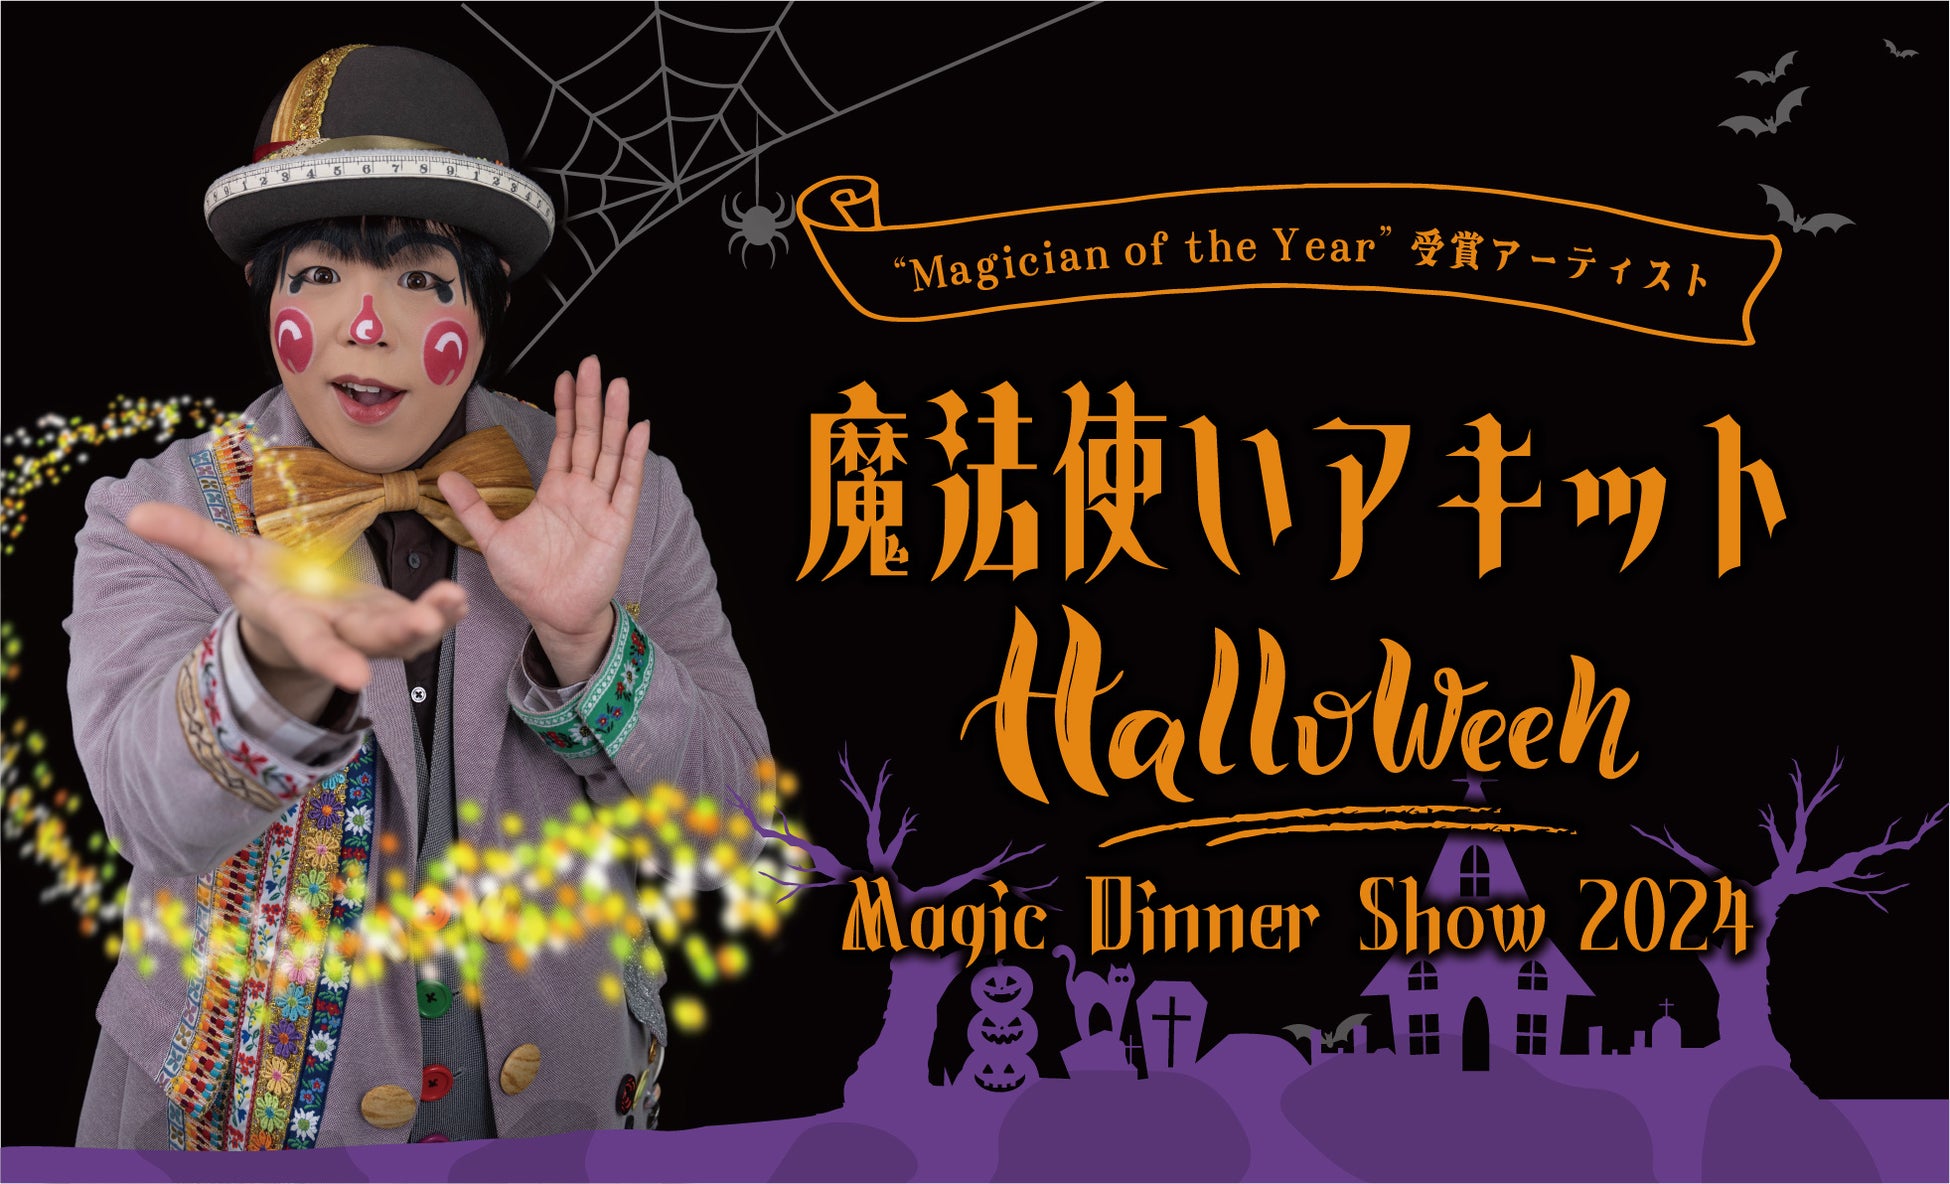 【ホテルニューグランド】ハロウィーン気分を盛り上げるマジックショー「魔法使いアキット Halloween Magic Dinner Show 2024」